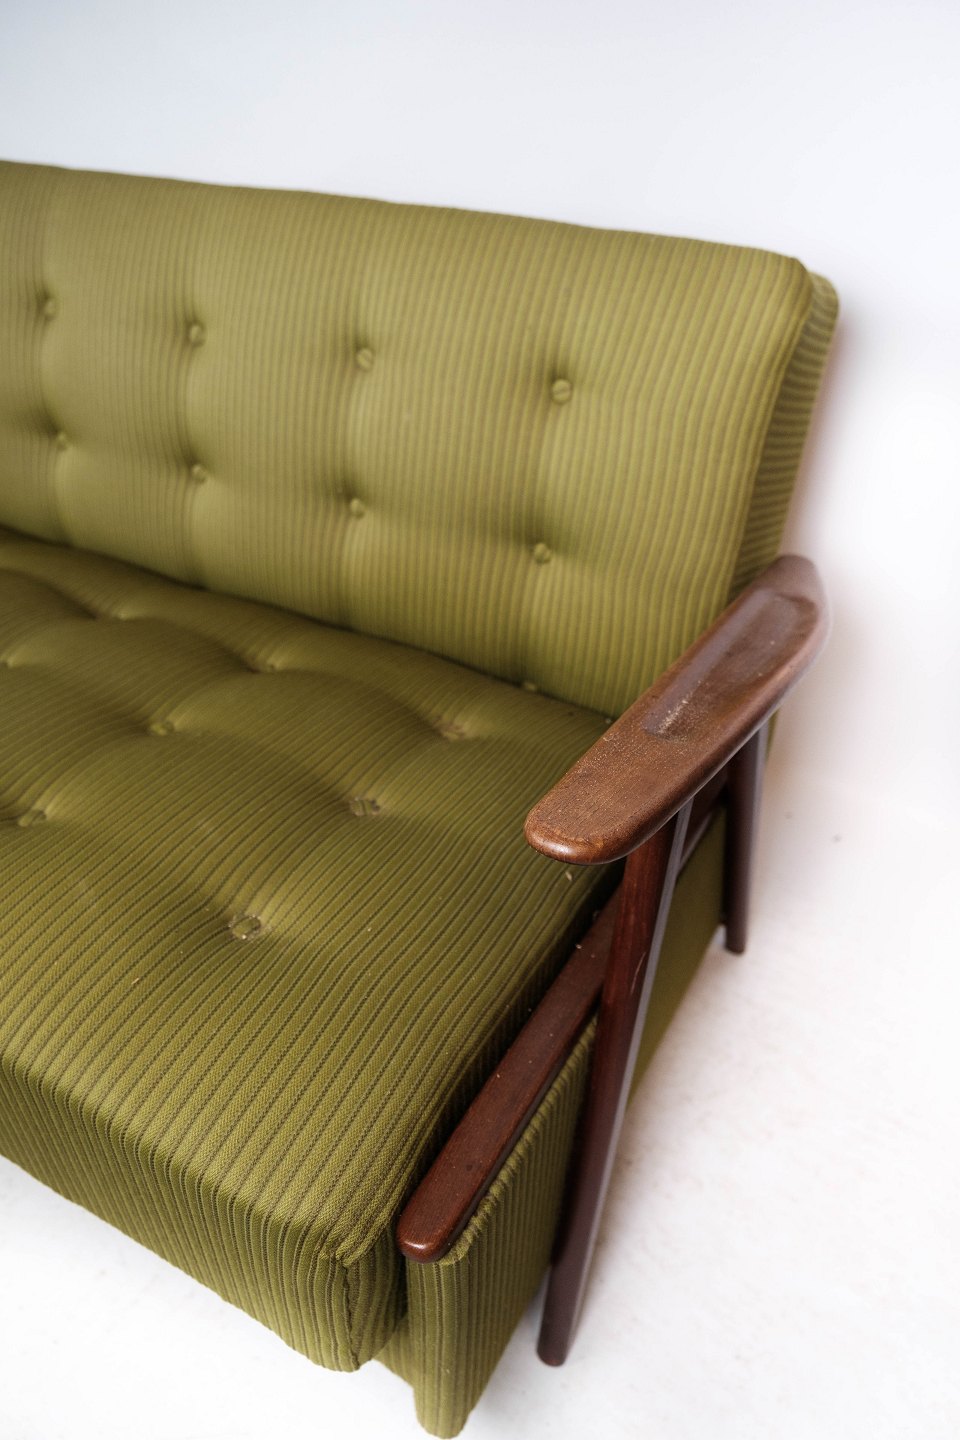 Sovesofa polstret med grønt uldstof og ben teak, af design 1950erne. - Osted Antik & Design